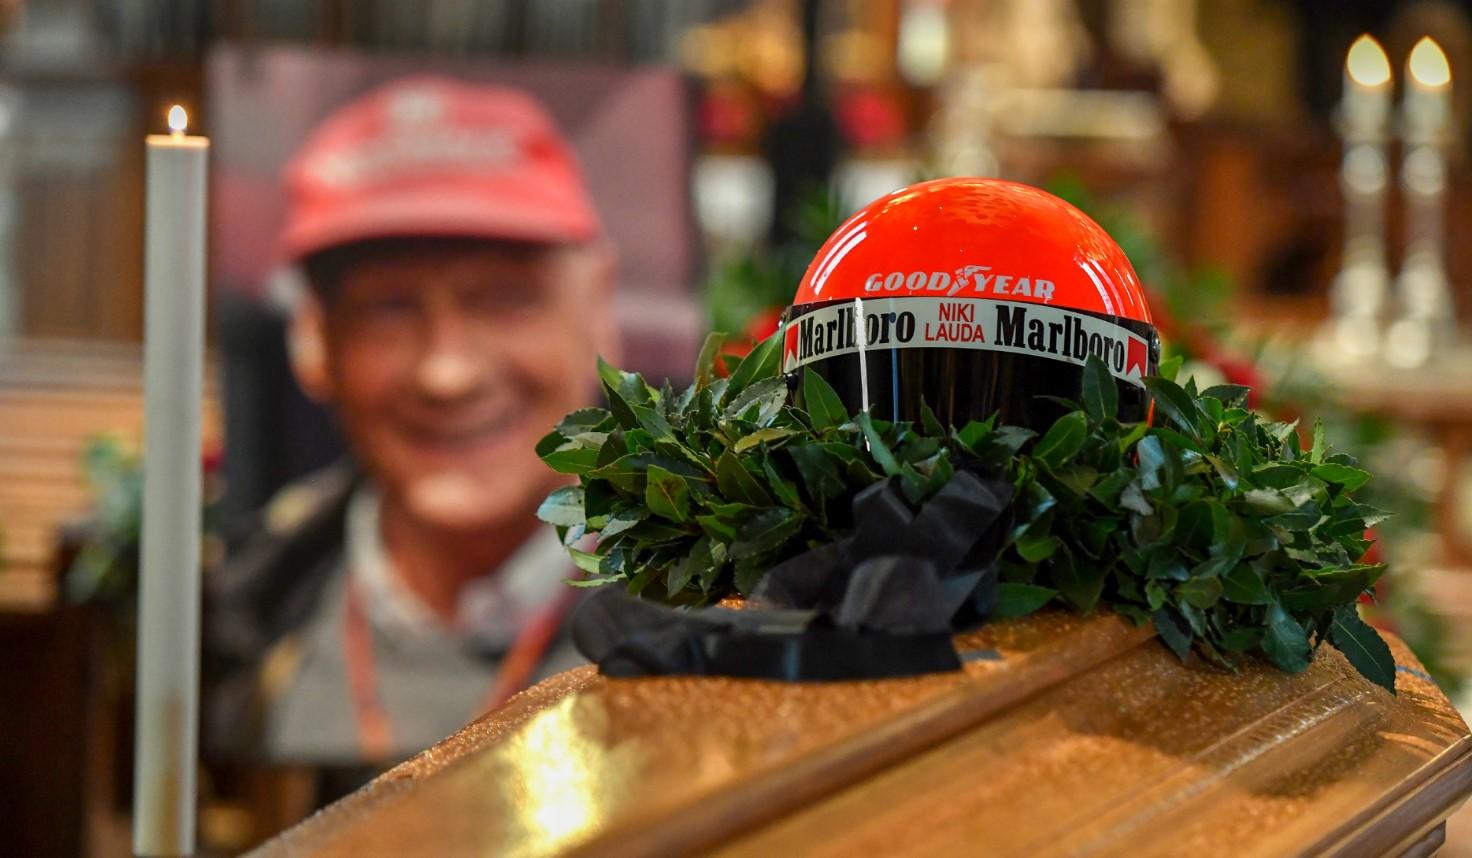 Niki Lauda sahranjen u rodnom Beču: Gest supruge pred kovčegom sve rasplakao